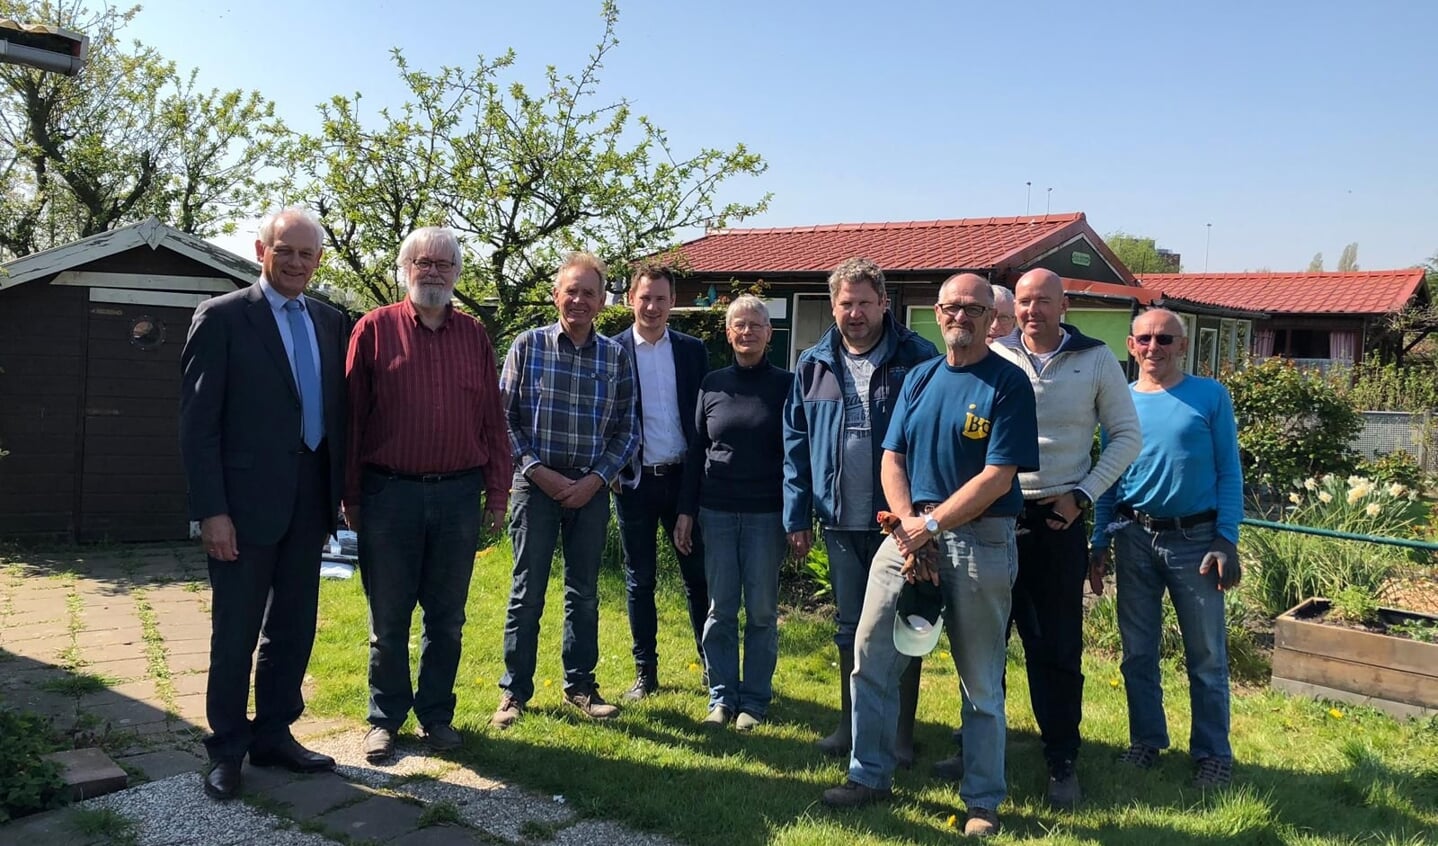 Burgemeester Cor Lamers, helemaal links, kwam in 2019 naar Vijfsluizen om Herbert Nikkels (derde van links) een lintje op te spelden. Enkele vrijwilligers van Stadstuinieren waren erbij aanwezig.